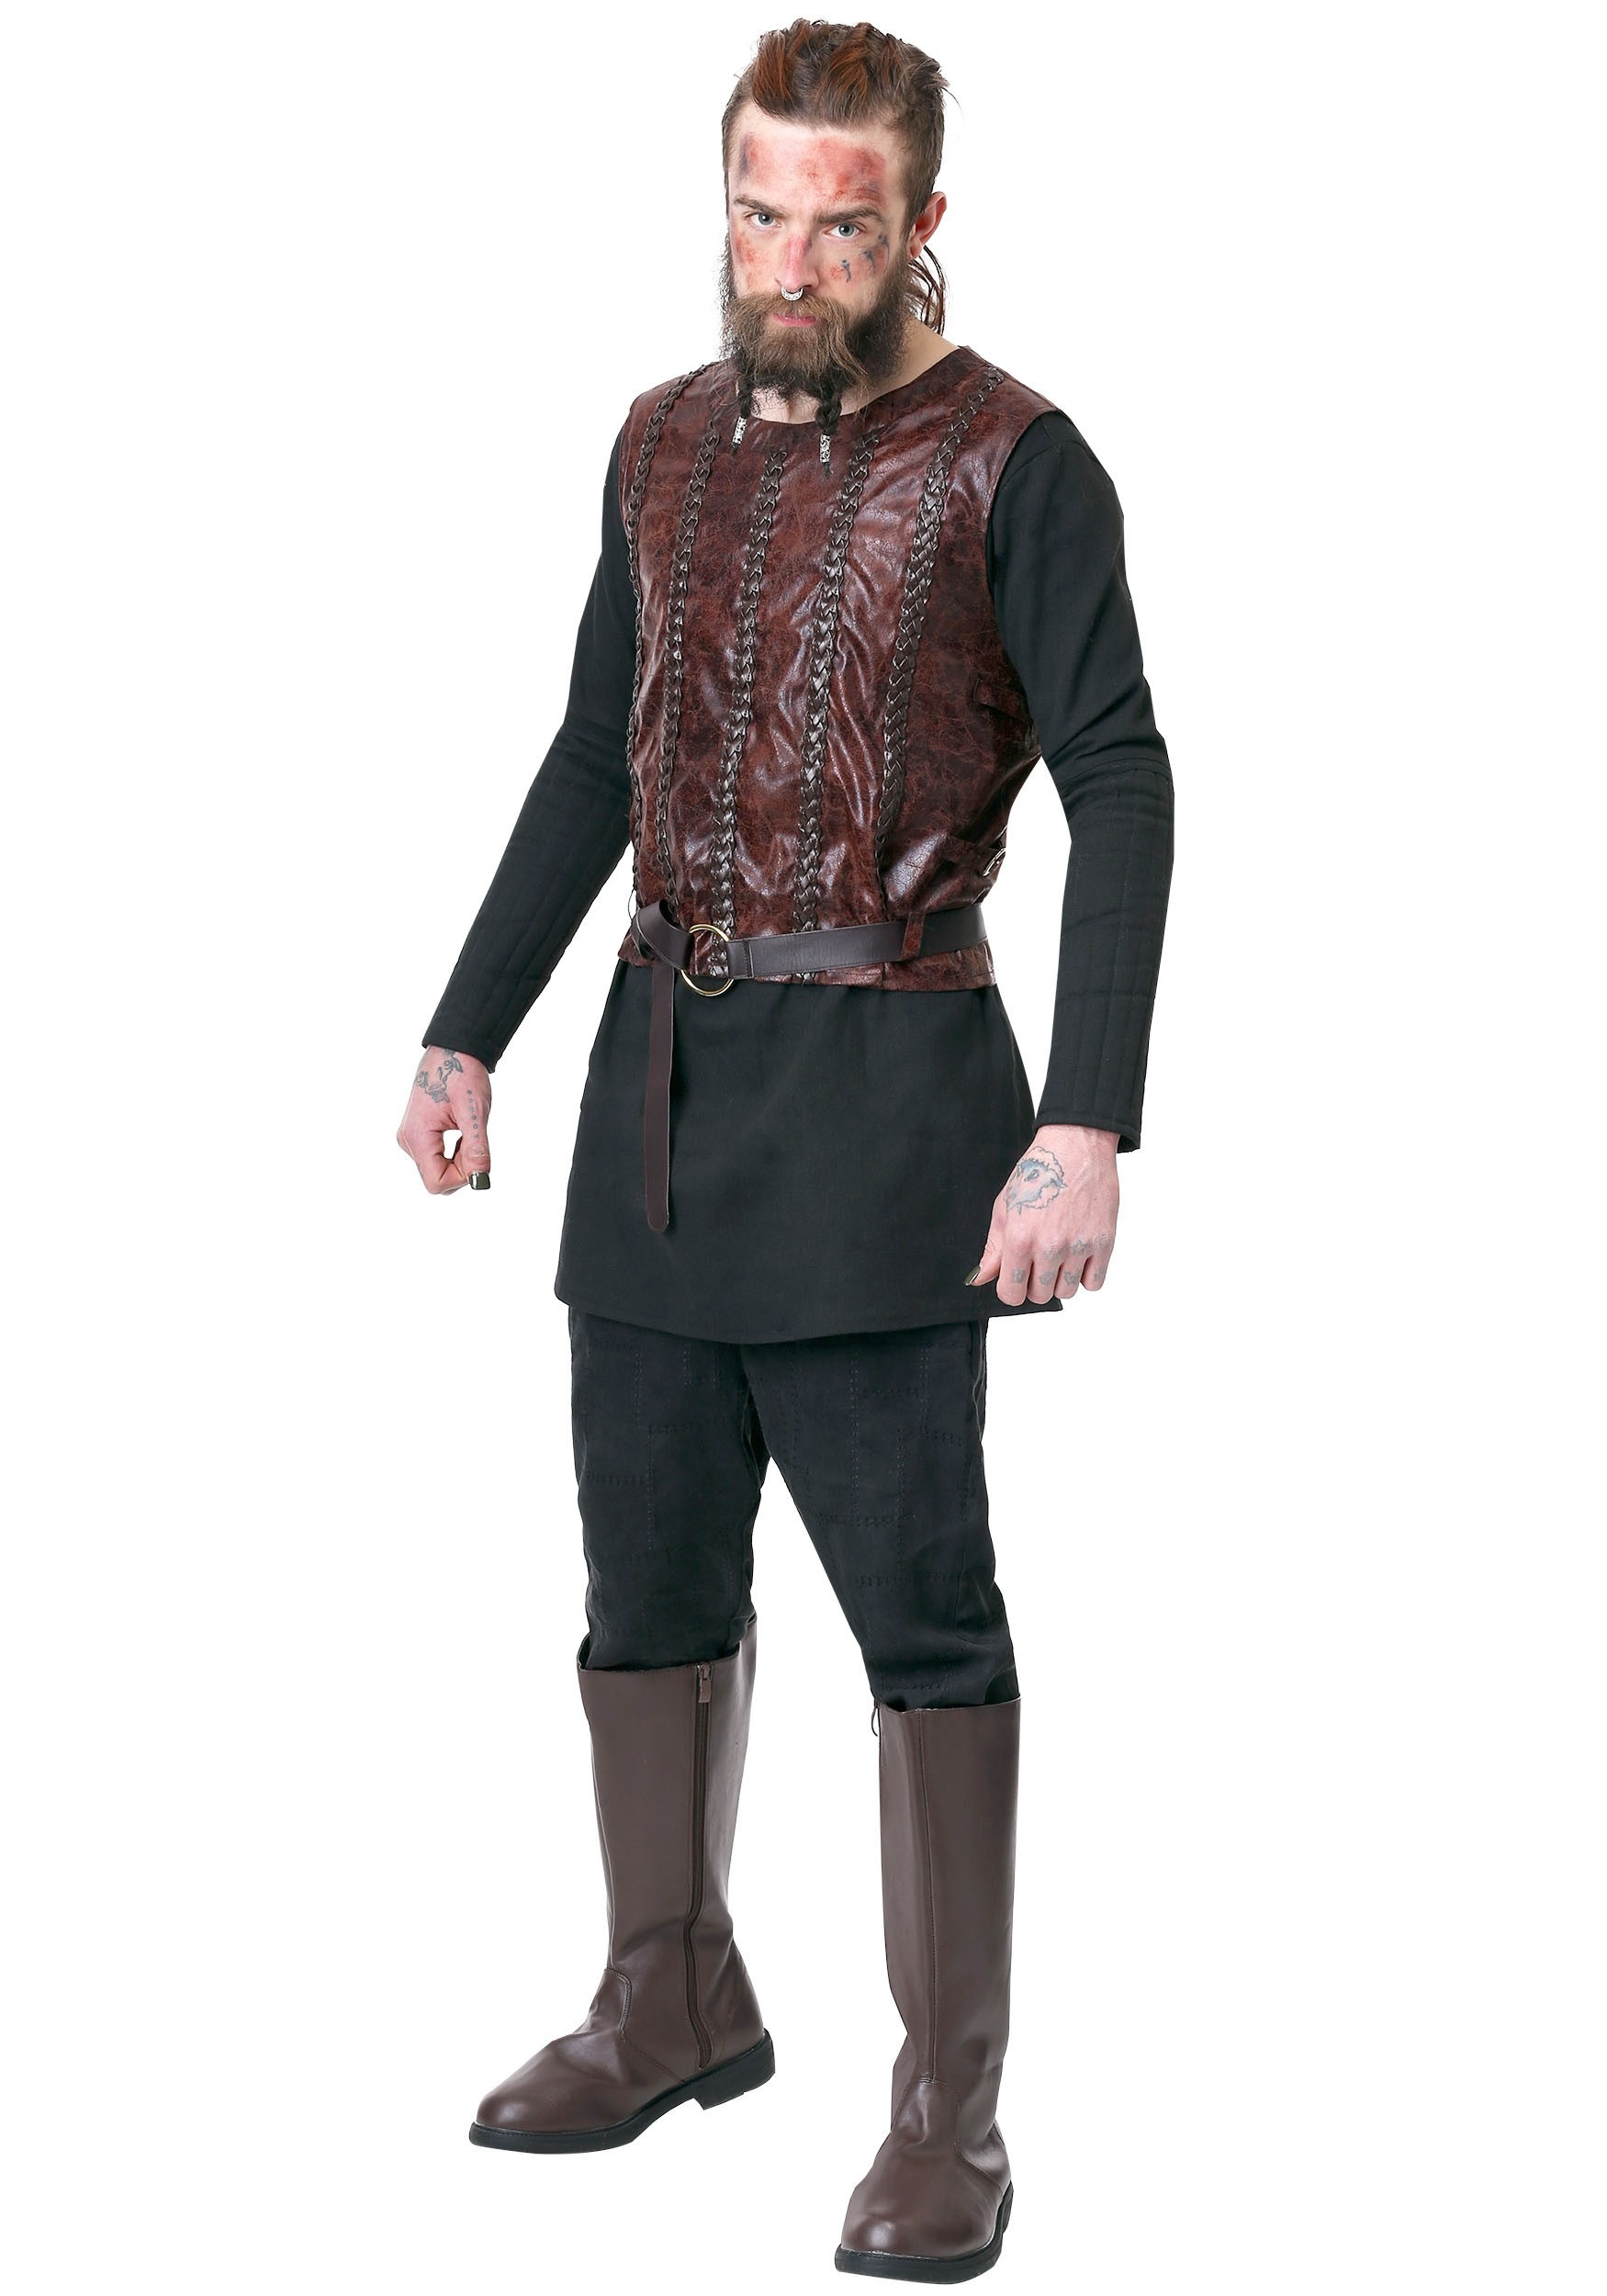 Image of Vikings Bjorn Ironside Costume for Men ID FUN6880AD-M